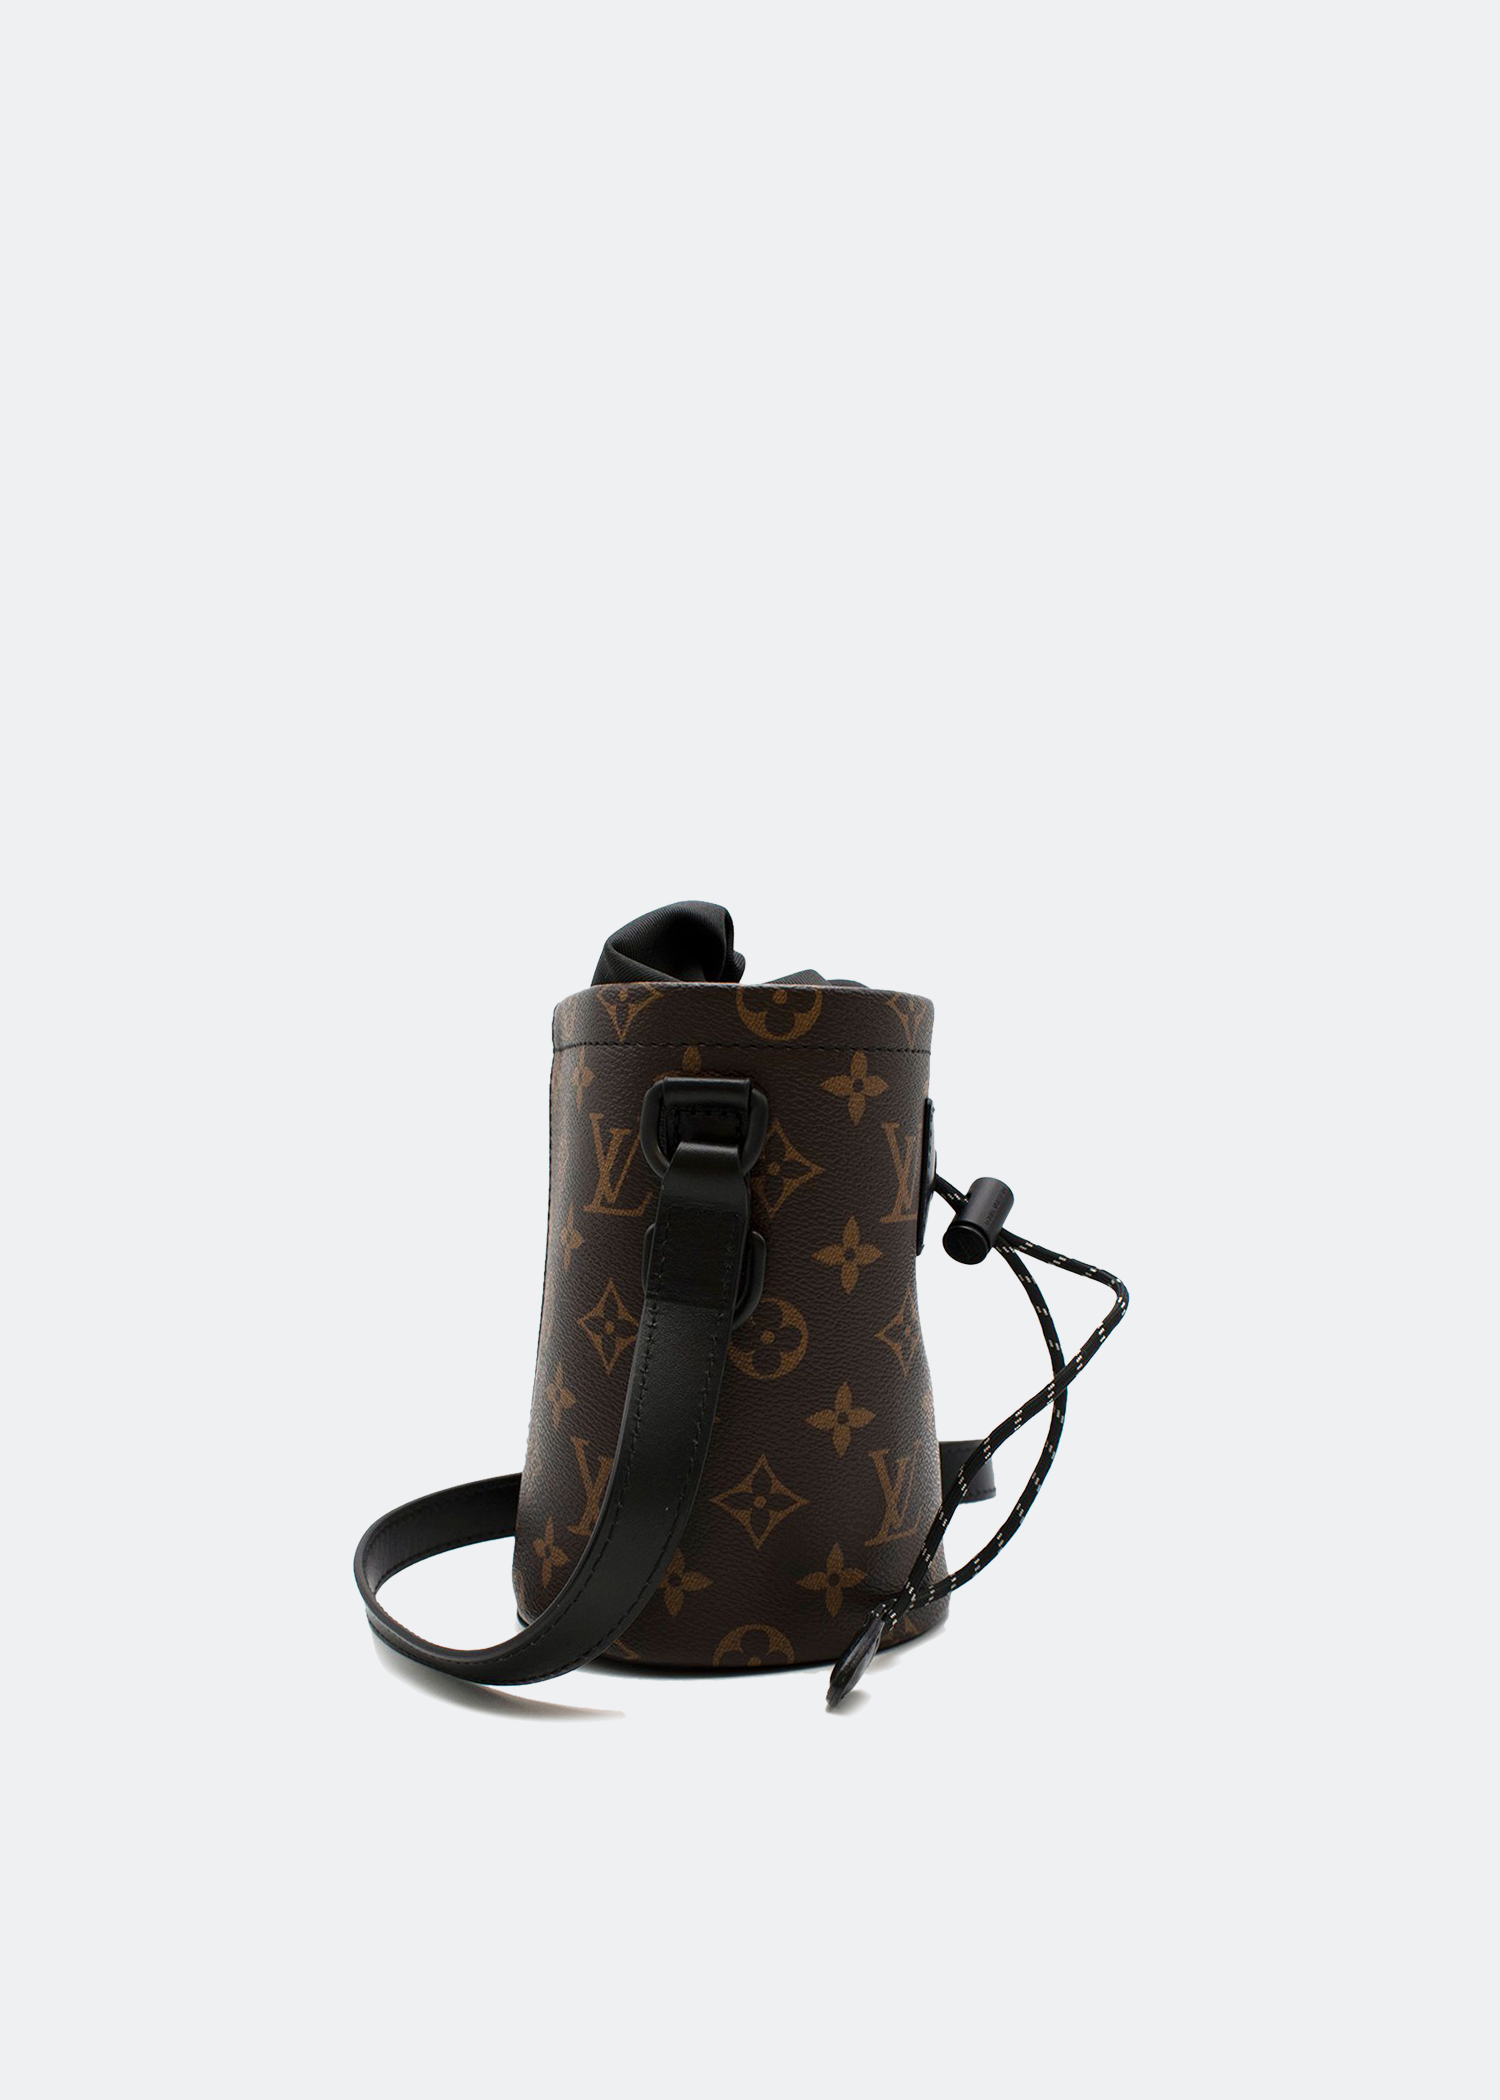 Louis Vuitton by Virgil Abloh Chalk Nano Bag - LTD Singapore Edition